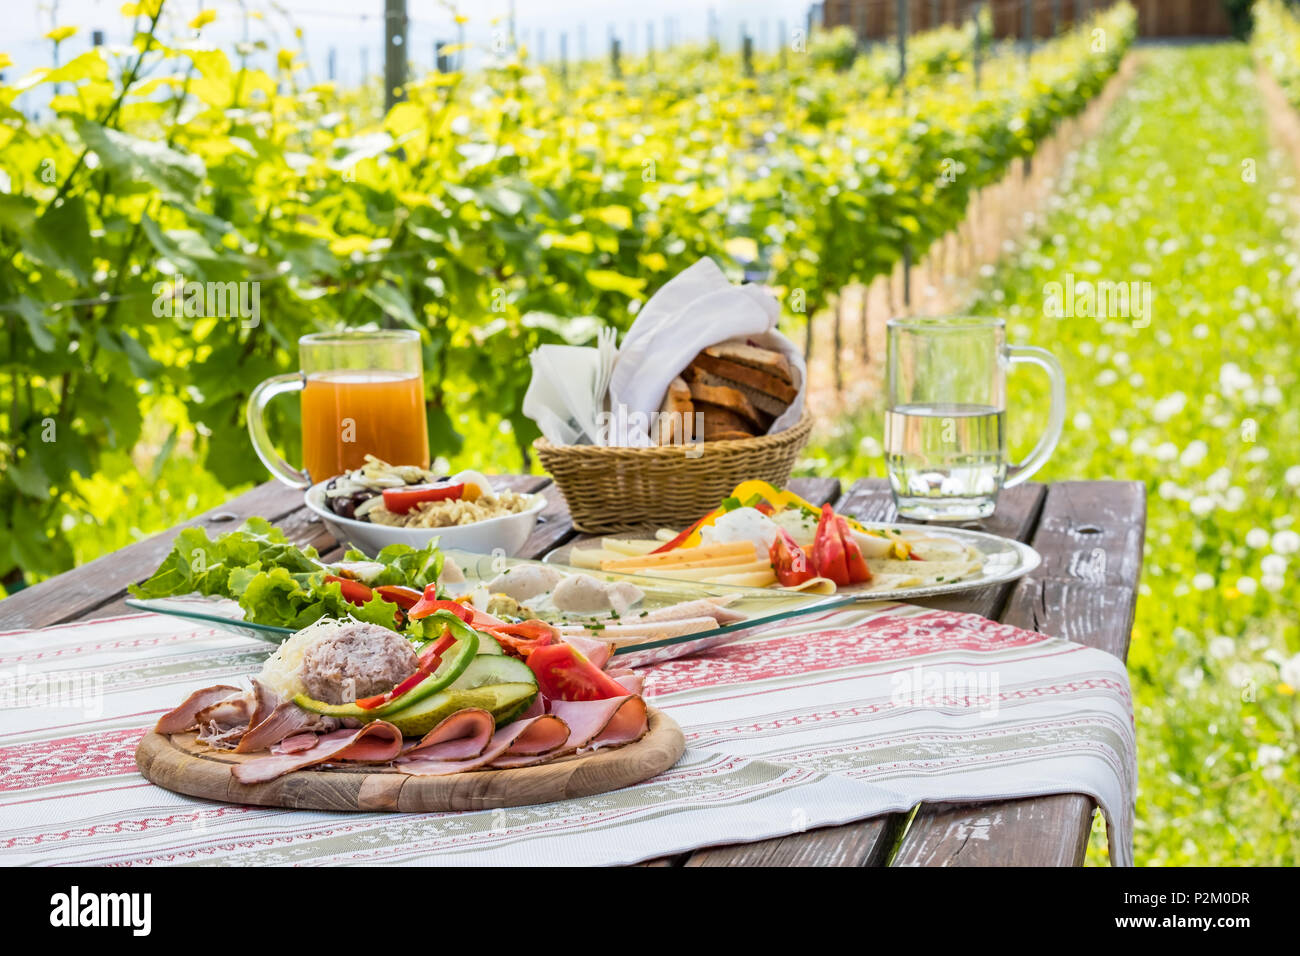 Brettljause, traditionelle kalte Platte mit Fleisch, Käse, Fisch, Gemüse, Brot und Getränke auf Holztisch im Weinberg mit Hütte in der Steiermark, Österreich Stockfoto